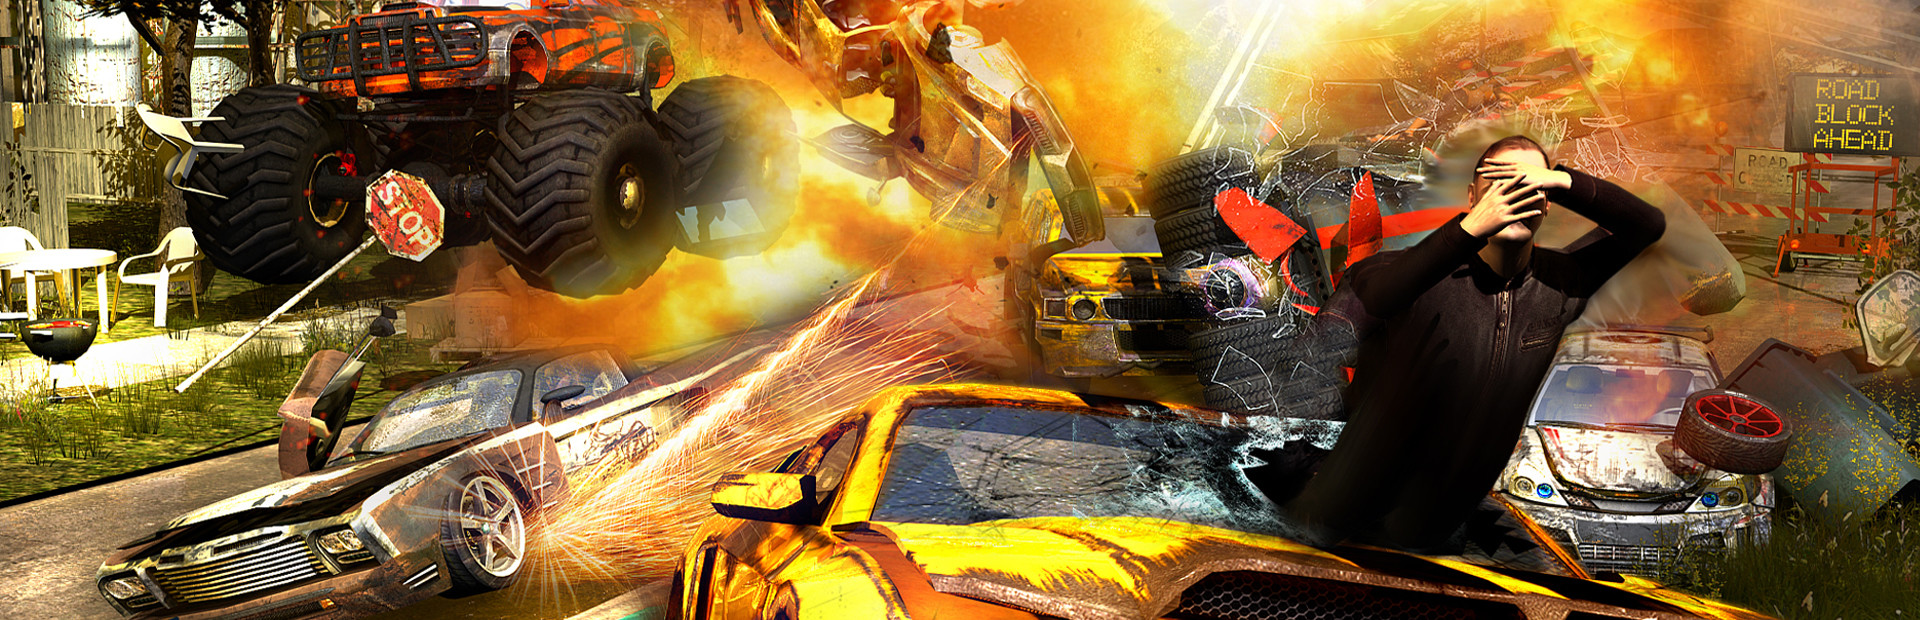 Flatout 3: Chaos & Destruction cover image